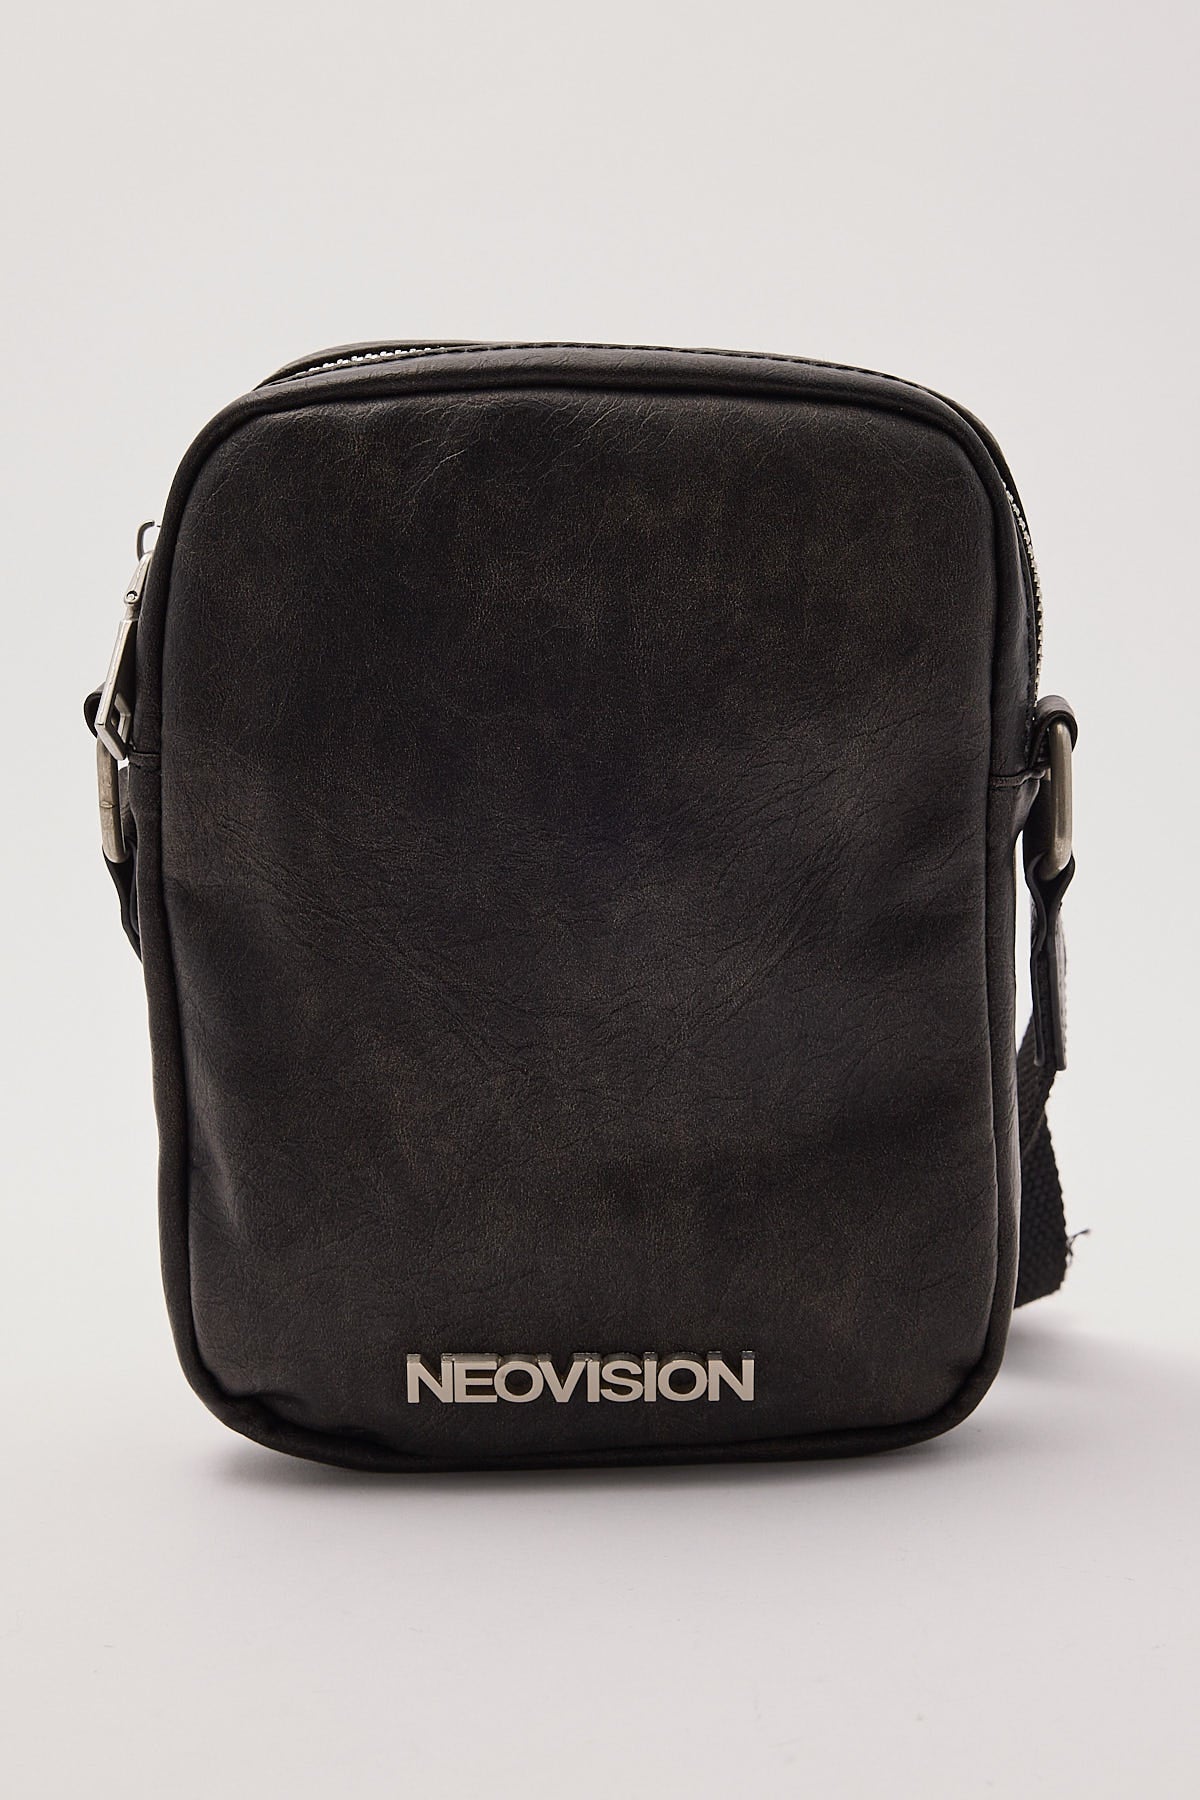 Neovision Washed PU Crossbody Bag Washed Black